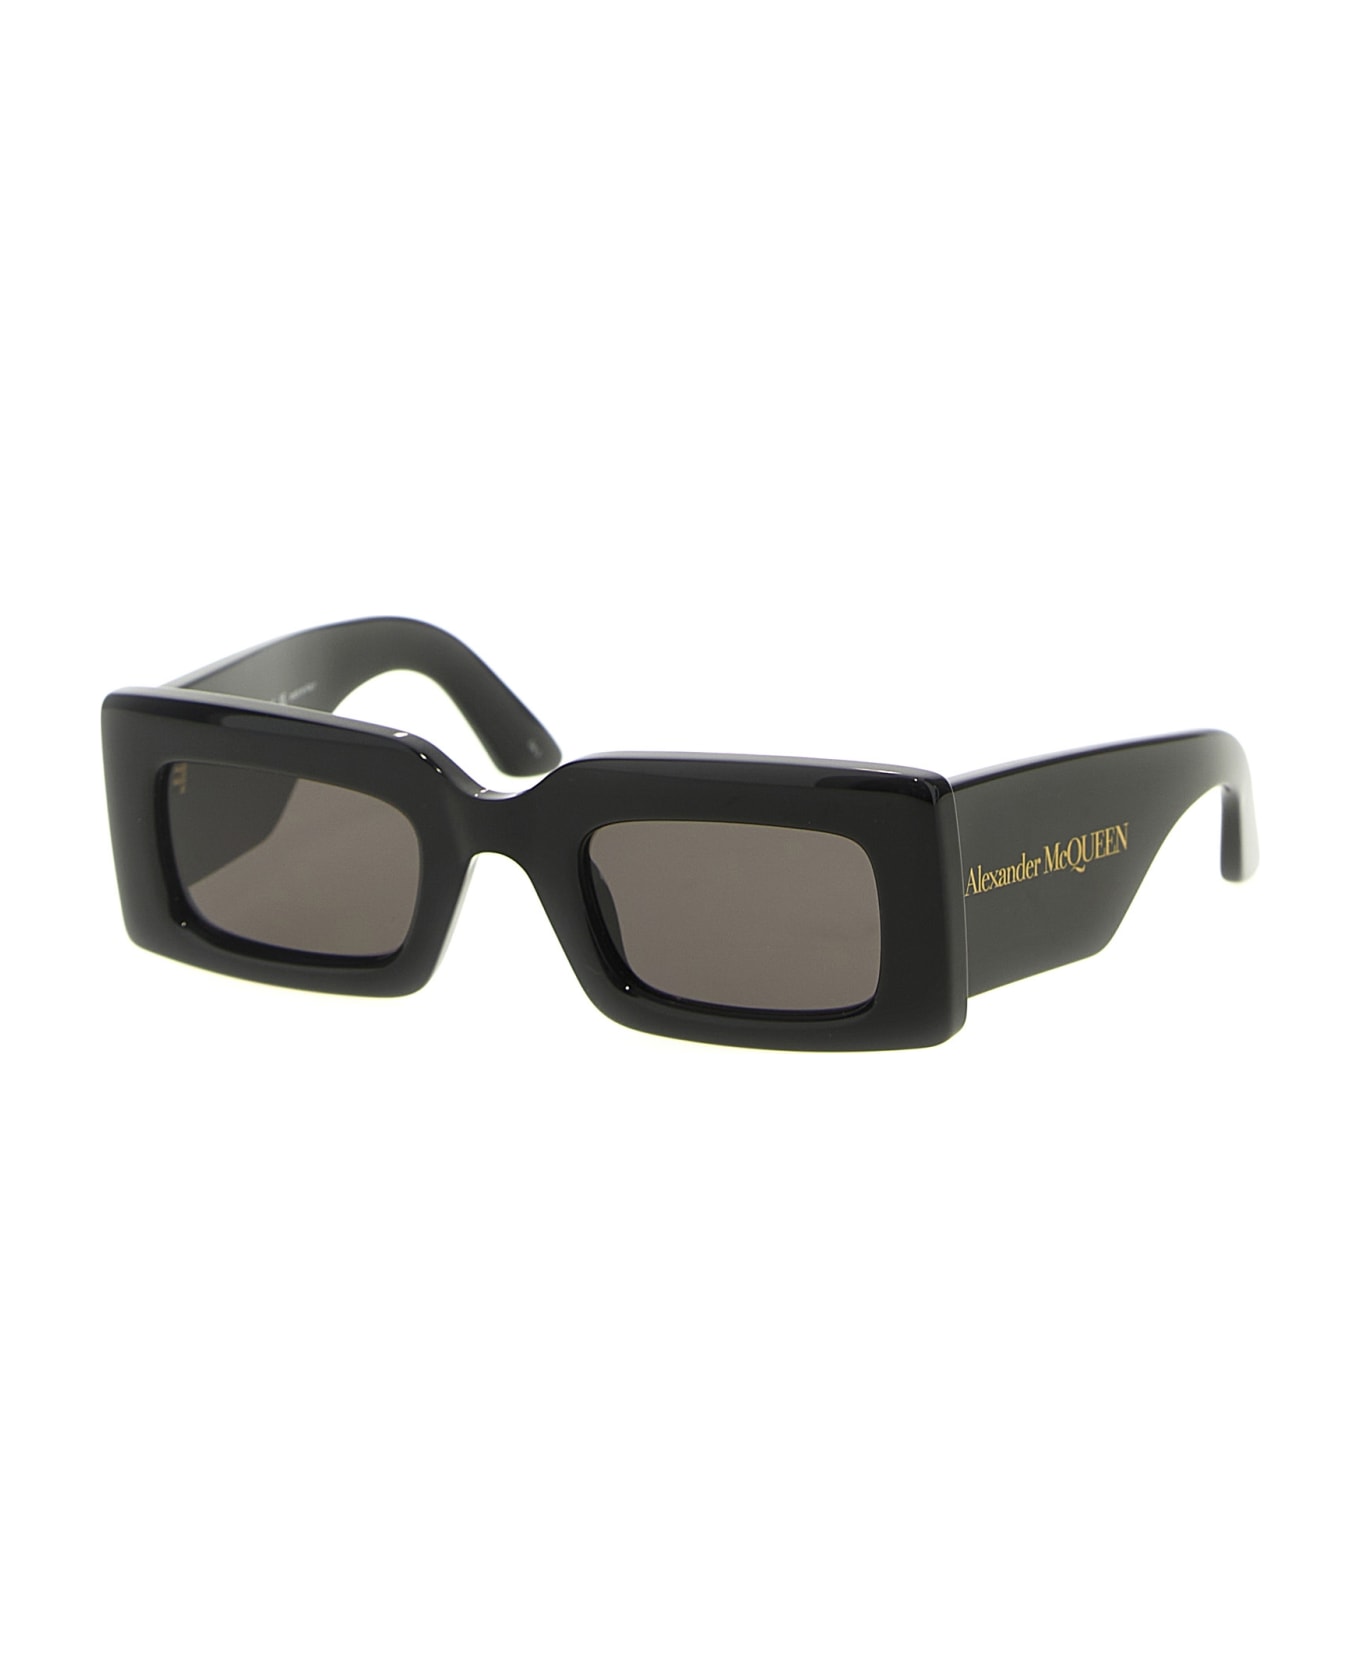 Alexander McQueen Eyewear Rectangular Sunglass - Black サングラス